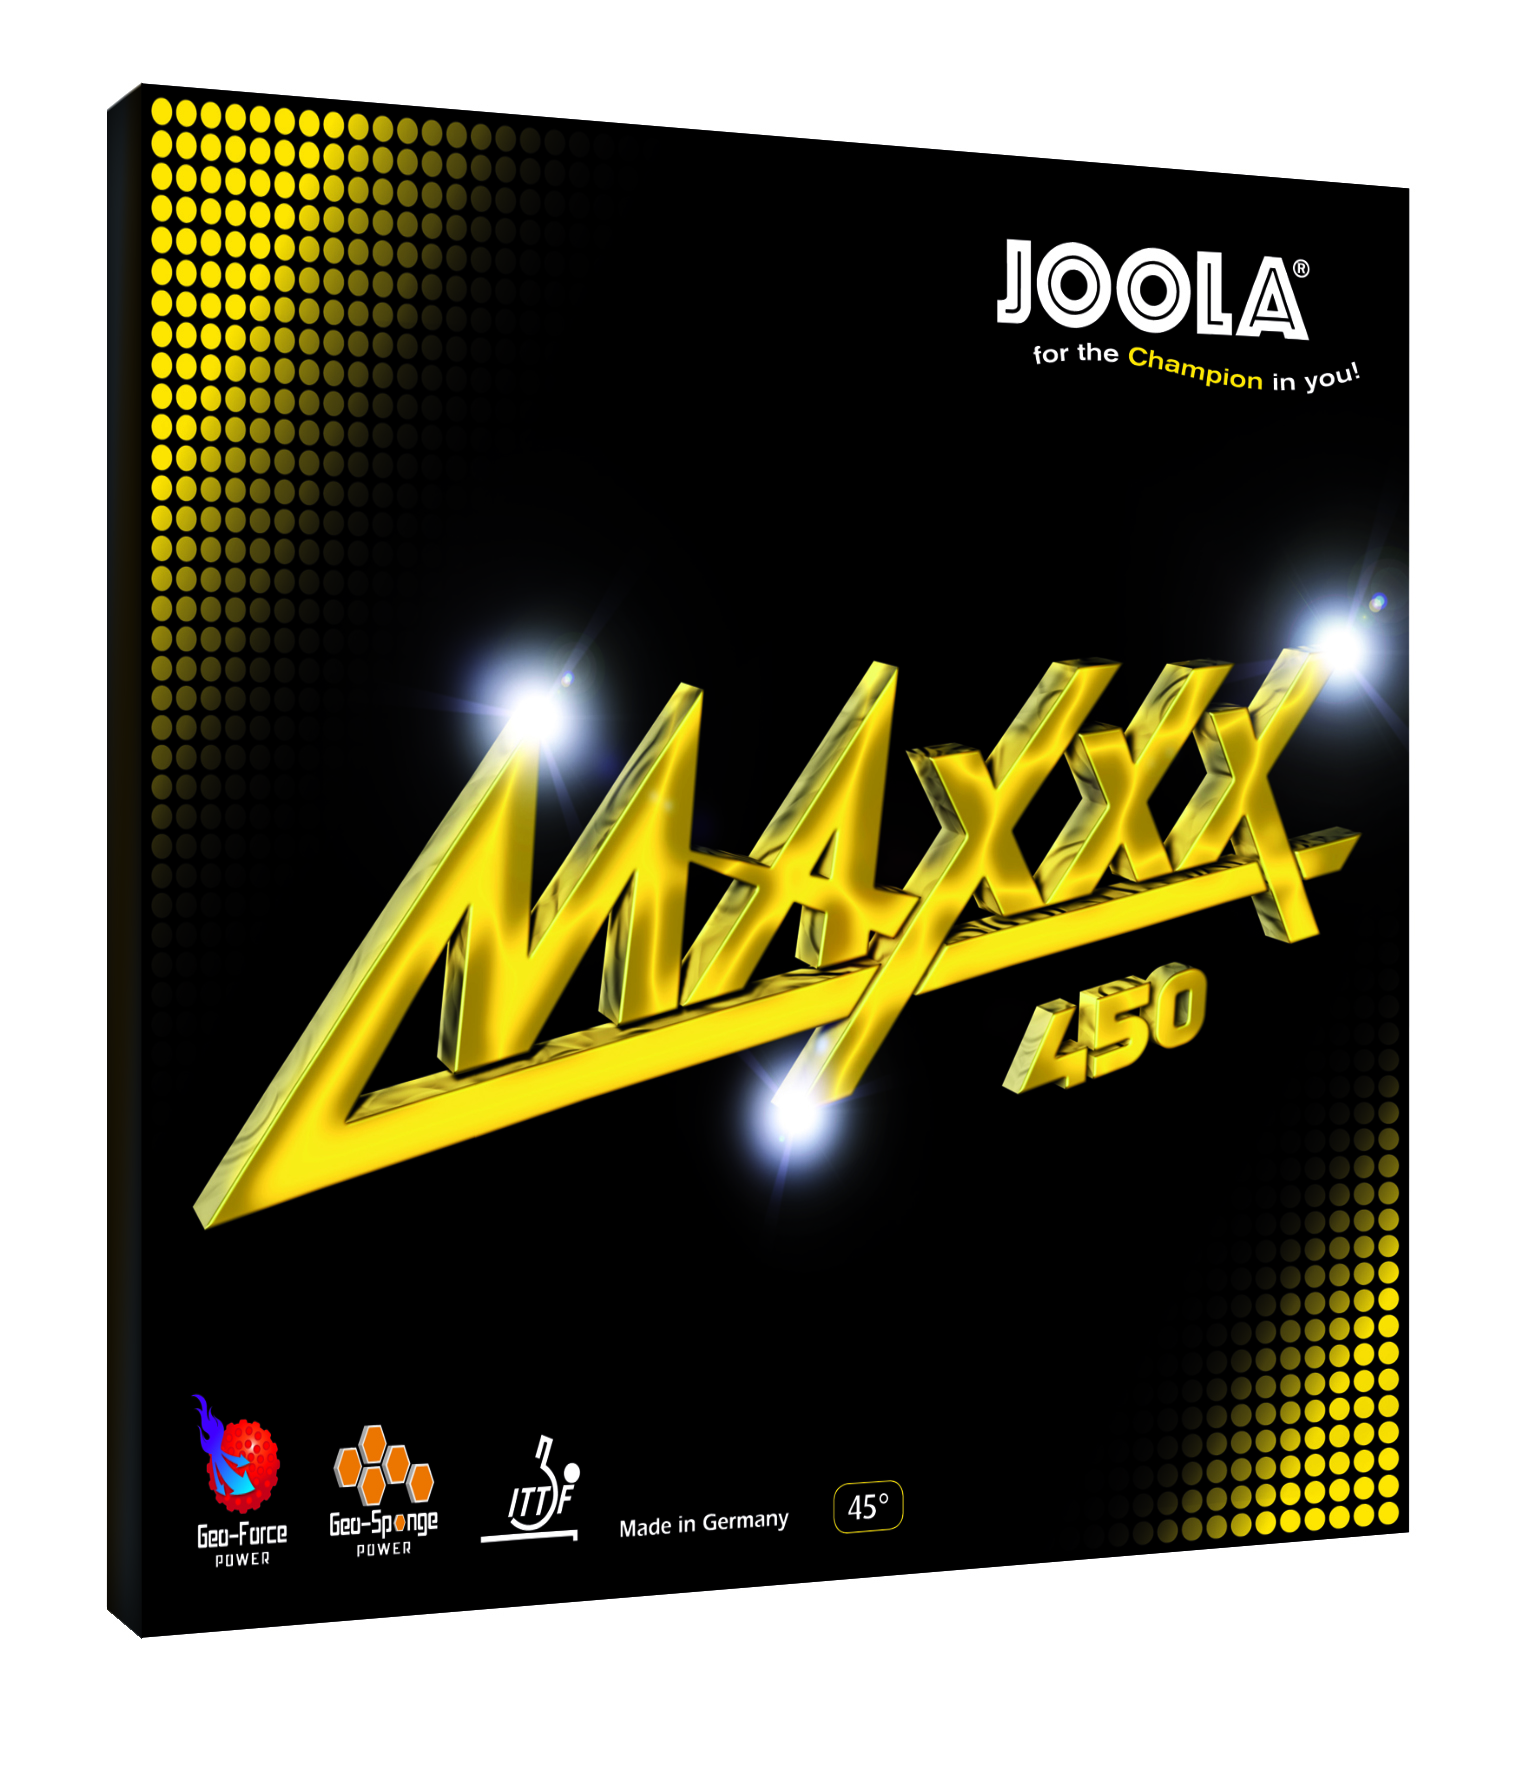 JOOLA MAXXX 450 - Empfehlung für den Spielertyp - OFFENSIV SPIN von Joola